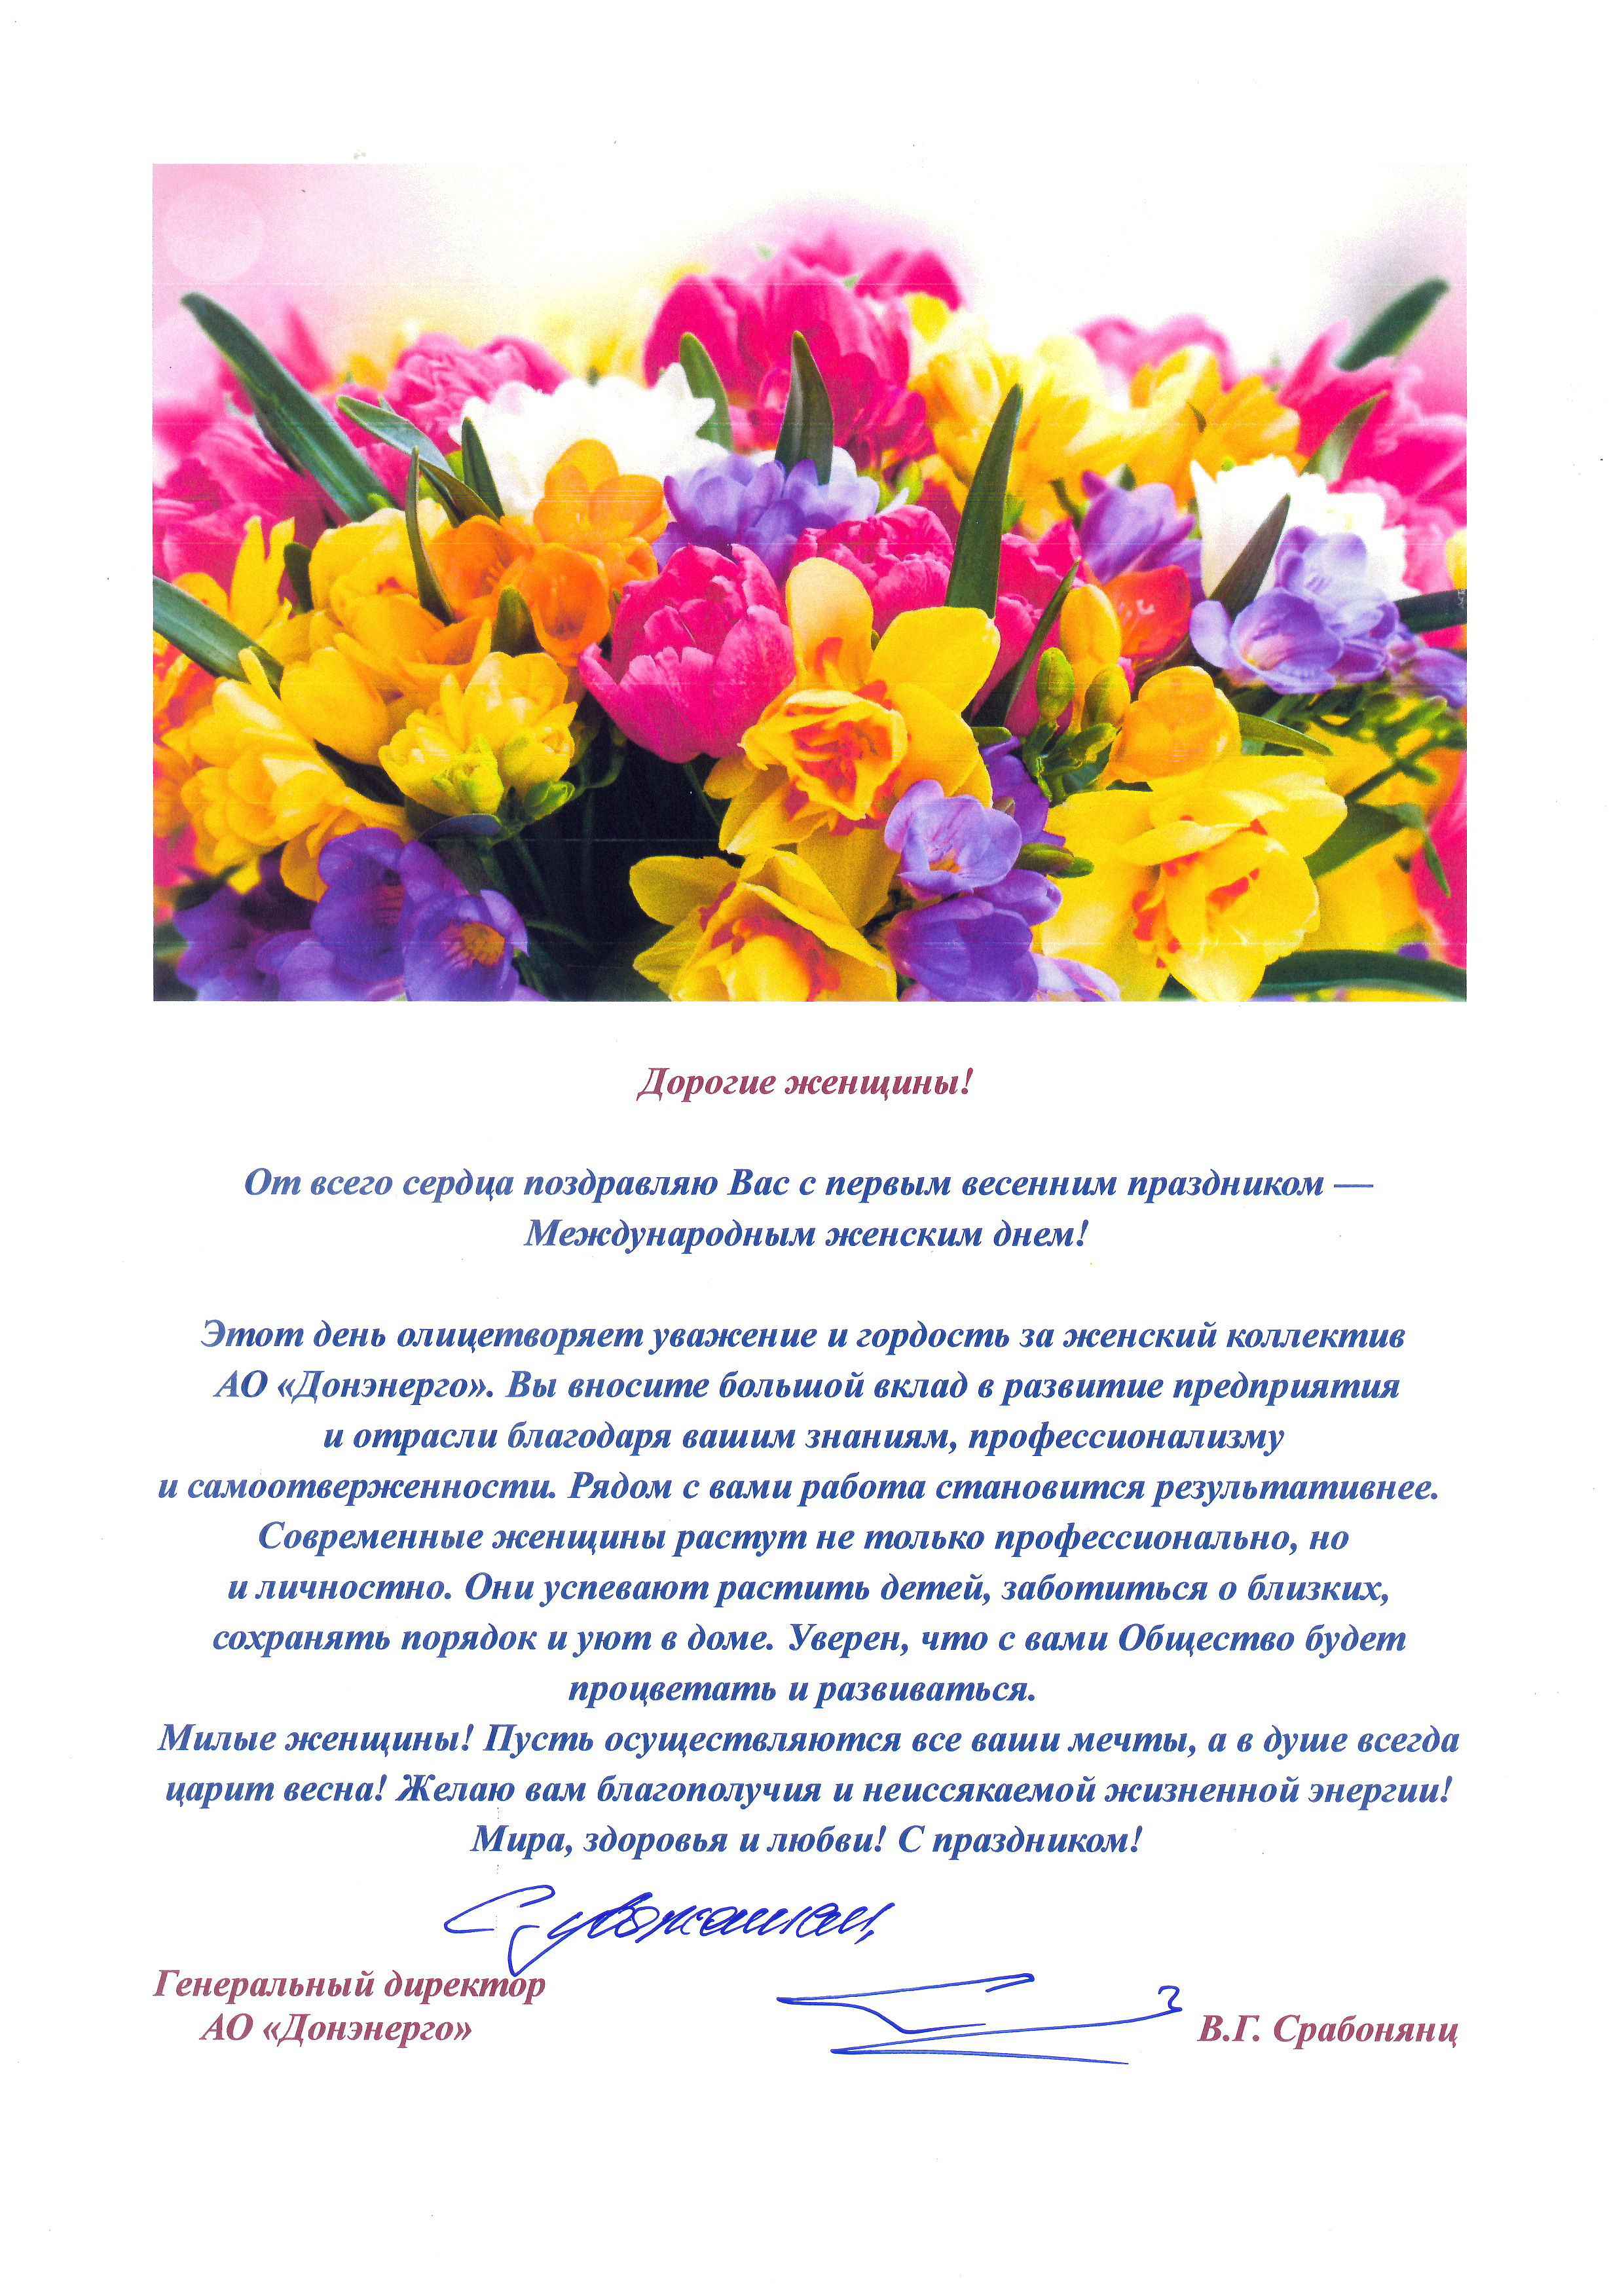 Поздравление генерального директора АО «Донэнерго» В.Г. Срабонянц с Международным женским днем